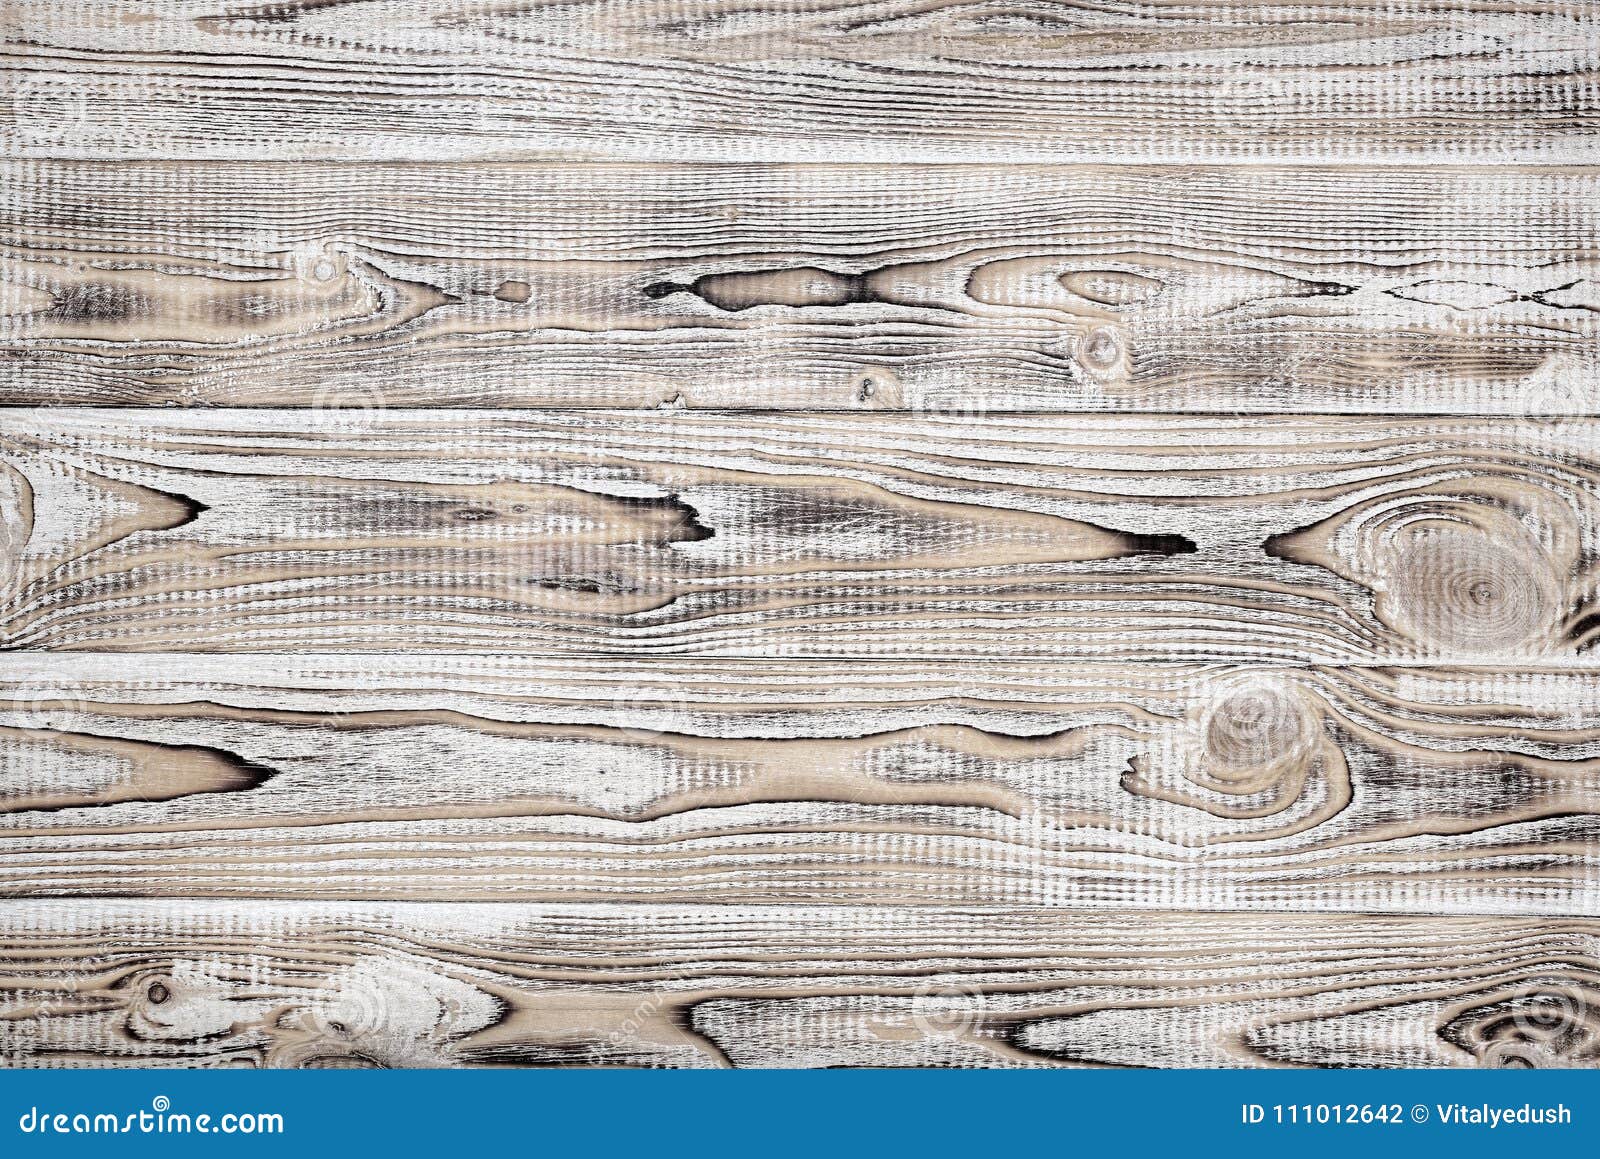 Hình nền gỗ đồng cỏ rustique tạo nên vẻ đẹp tự nhiên và mộc mạc, truyền đạt một thông điệp về sự chân thật và bền vững. Hãy xem hình ảnh để tìm hiểu thêm về sự đẹp đơn giản và tinh tế của gỗ đồng cỏ.